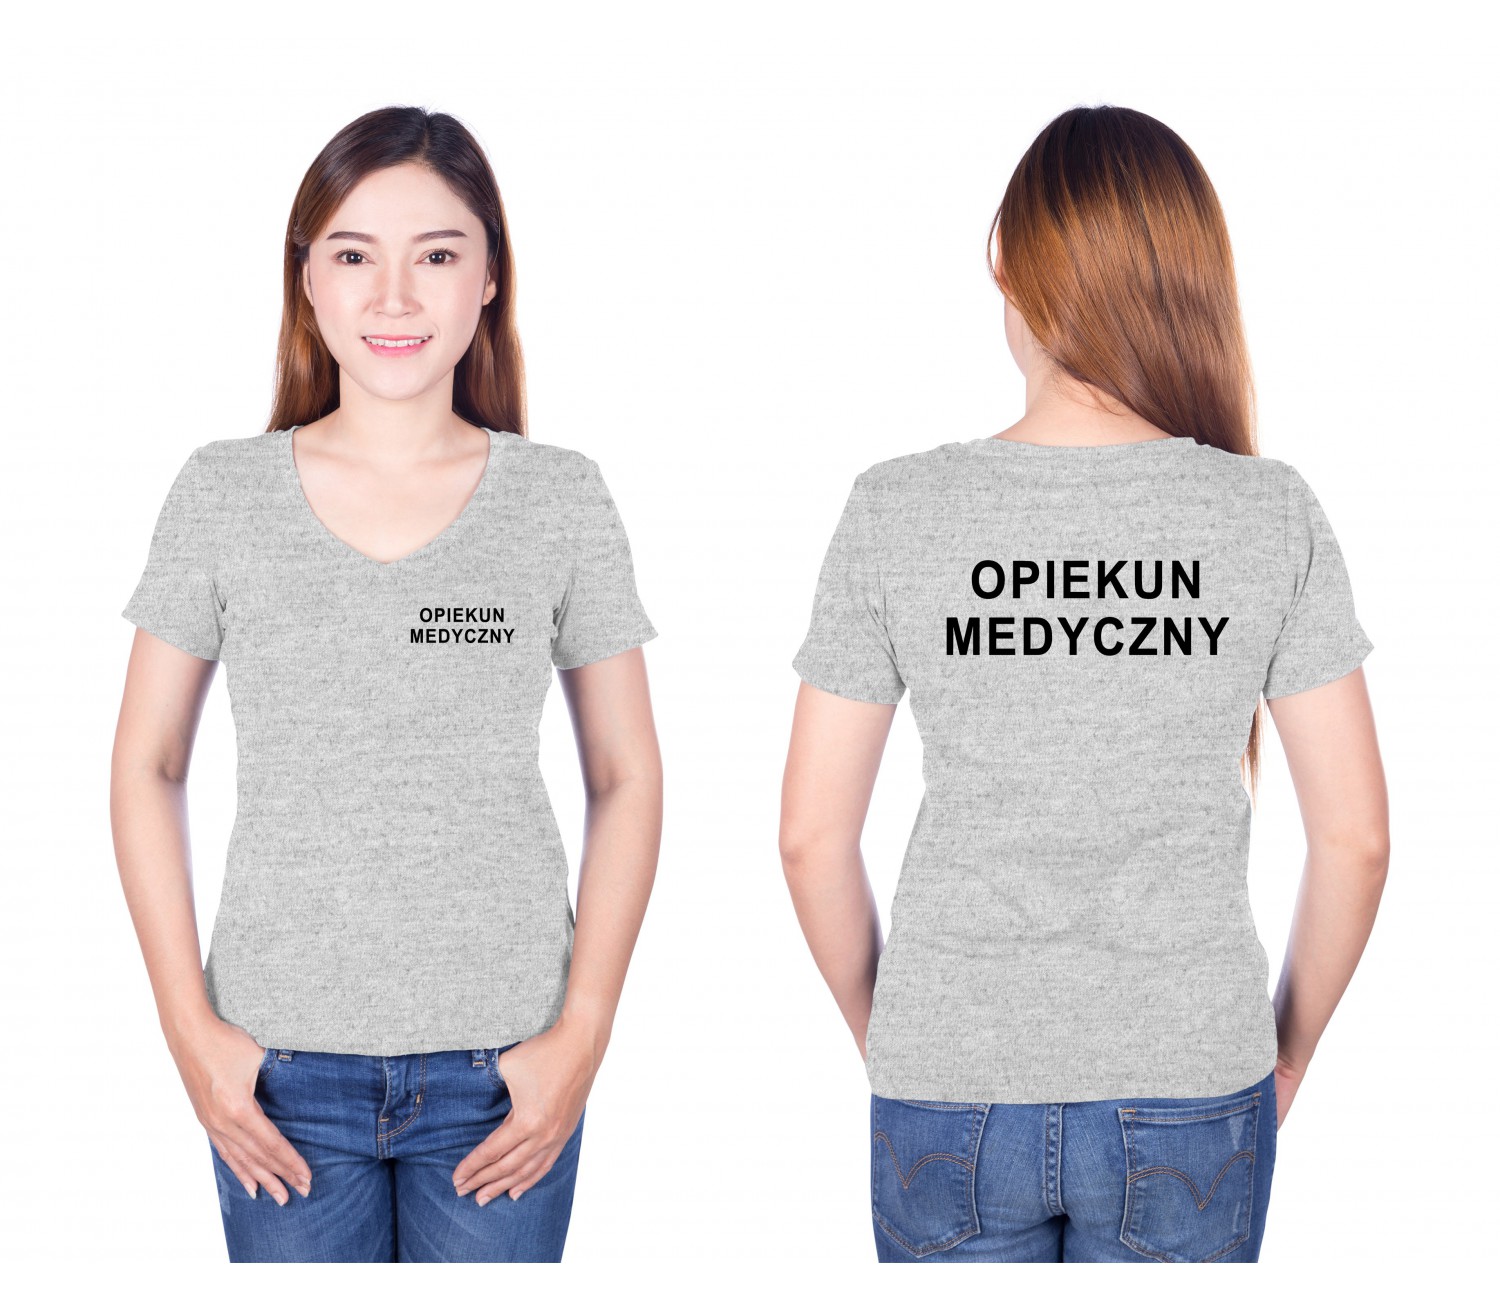 Opiekun Medyczny Koszulka V-Neck Medyczna